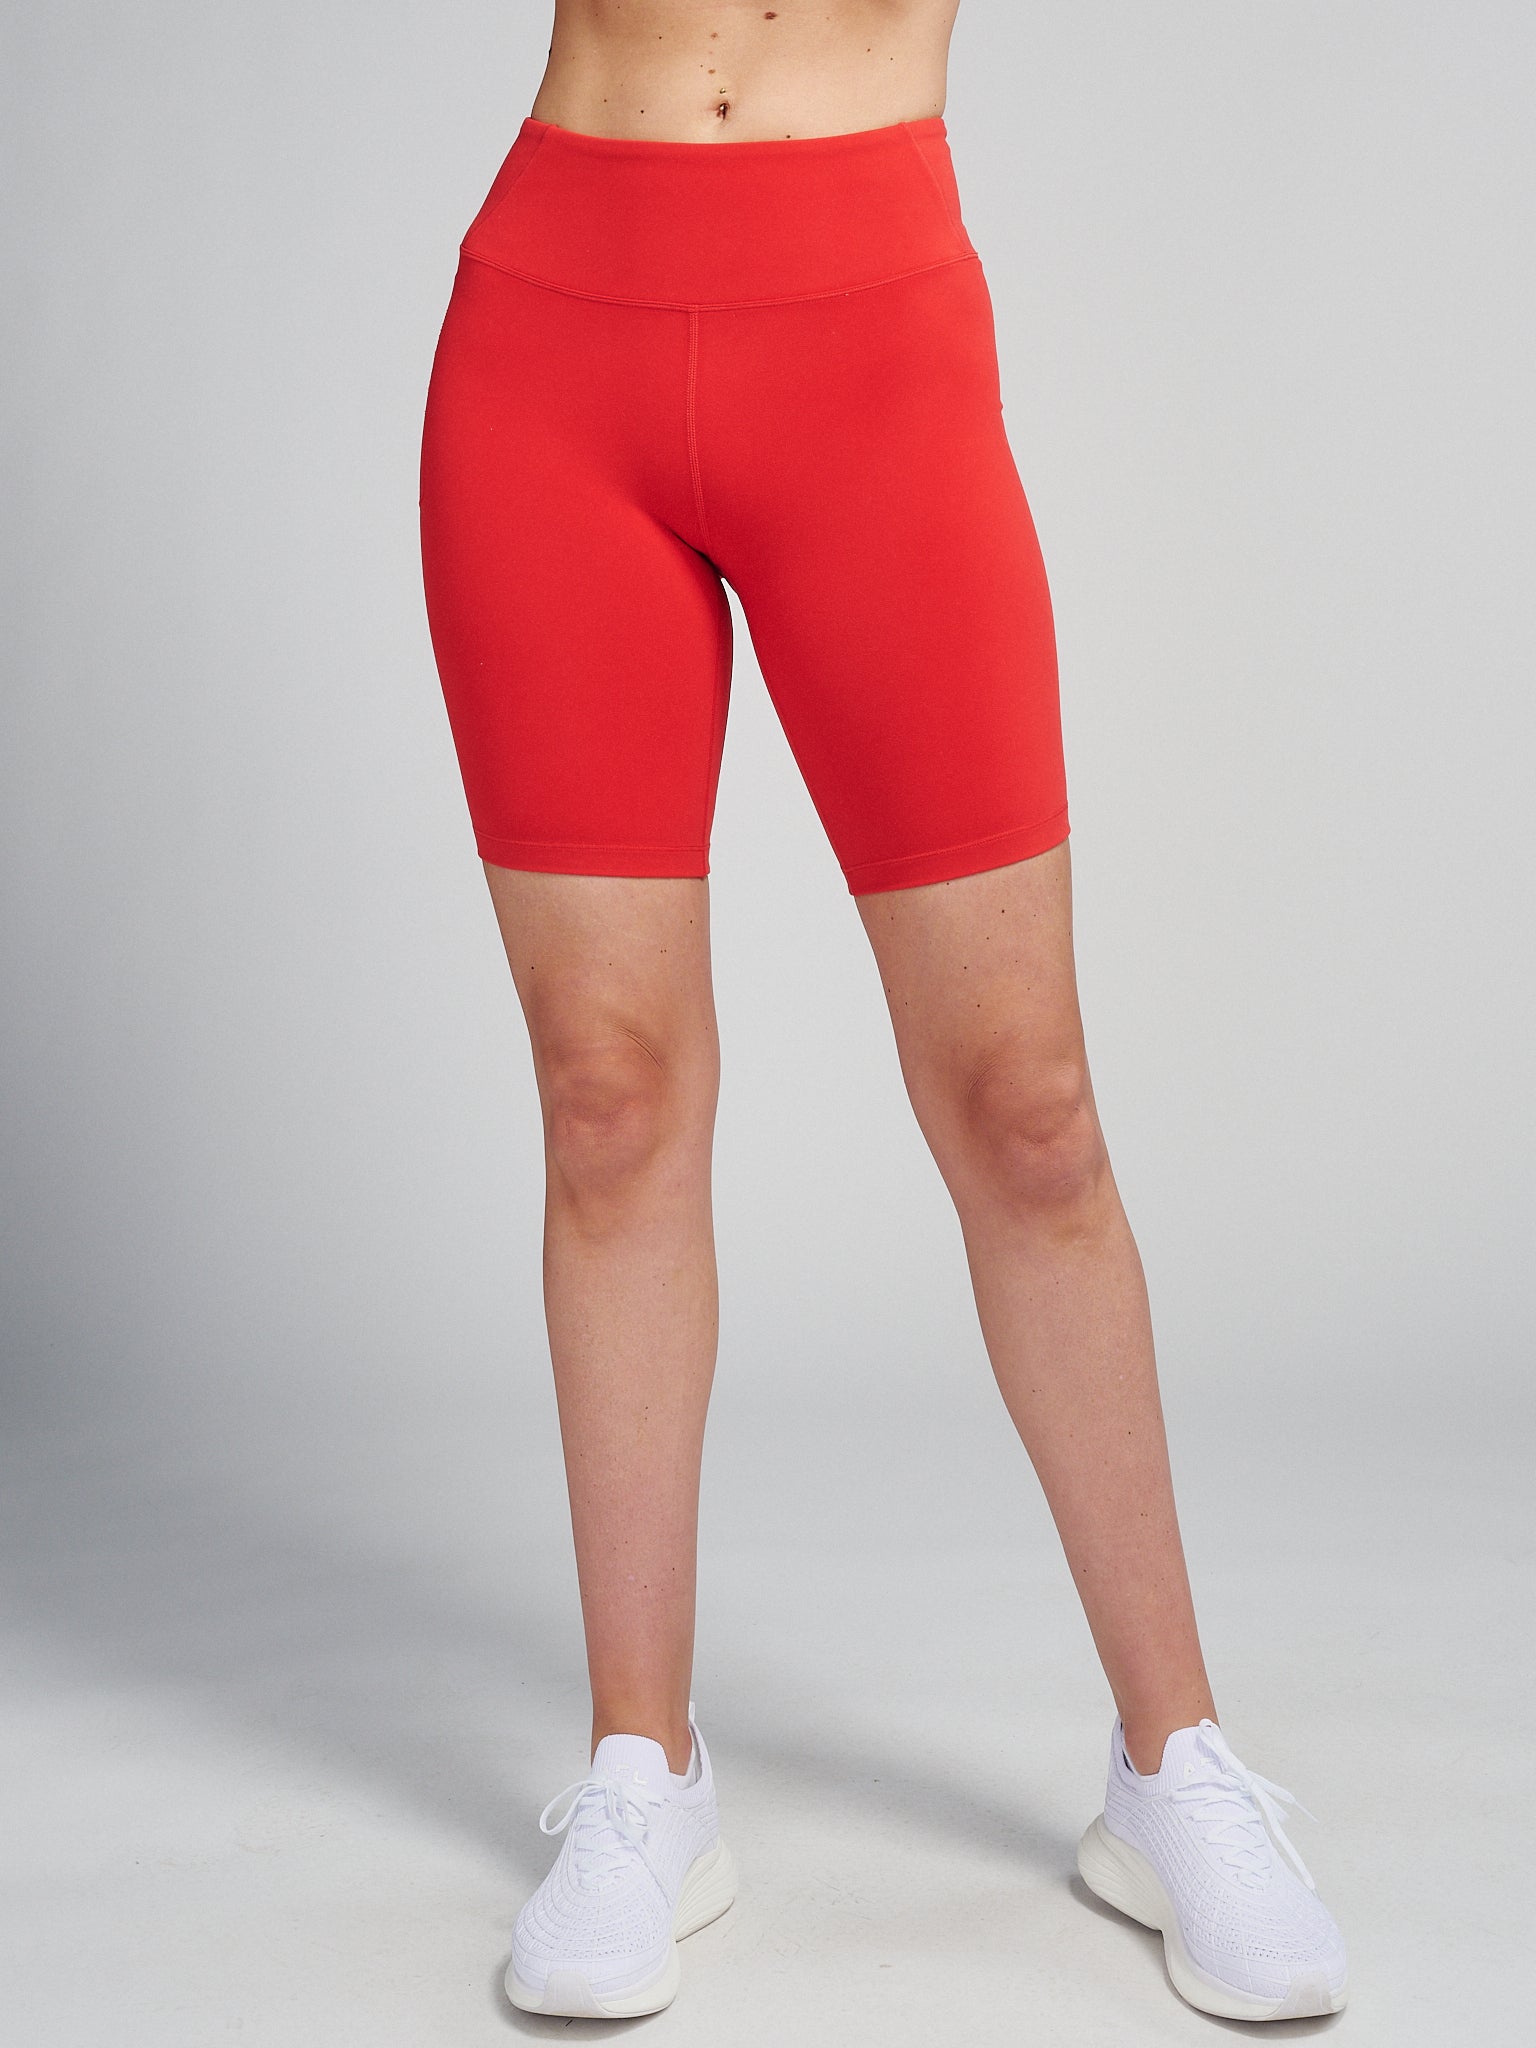 Red Cycling Bib Shorts Women - Shorter Inseam